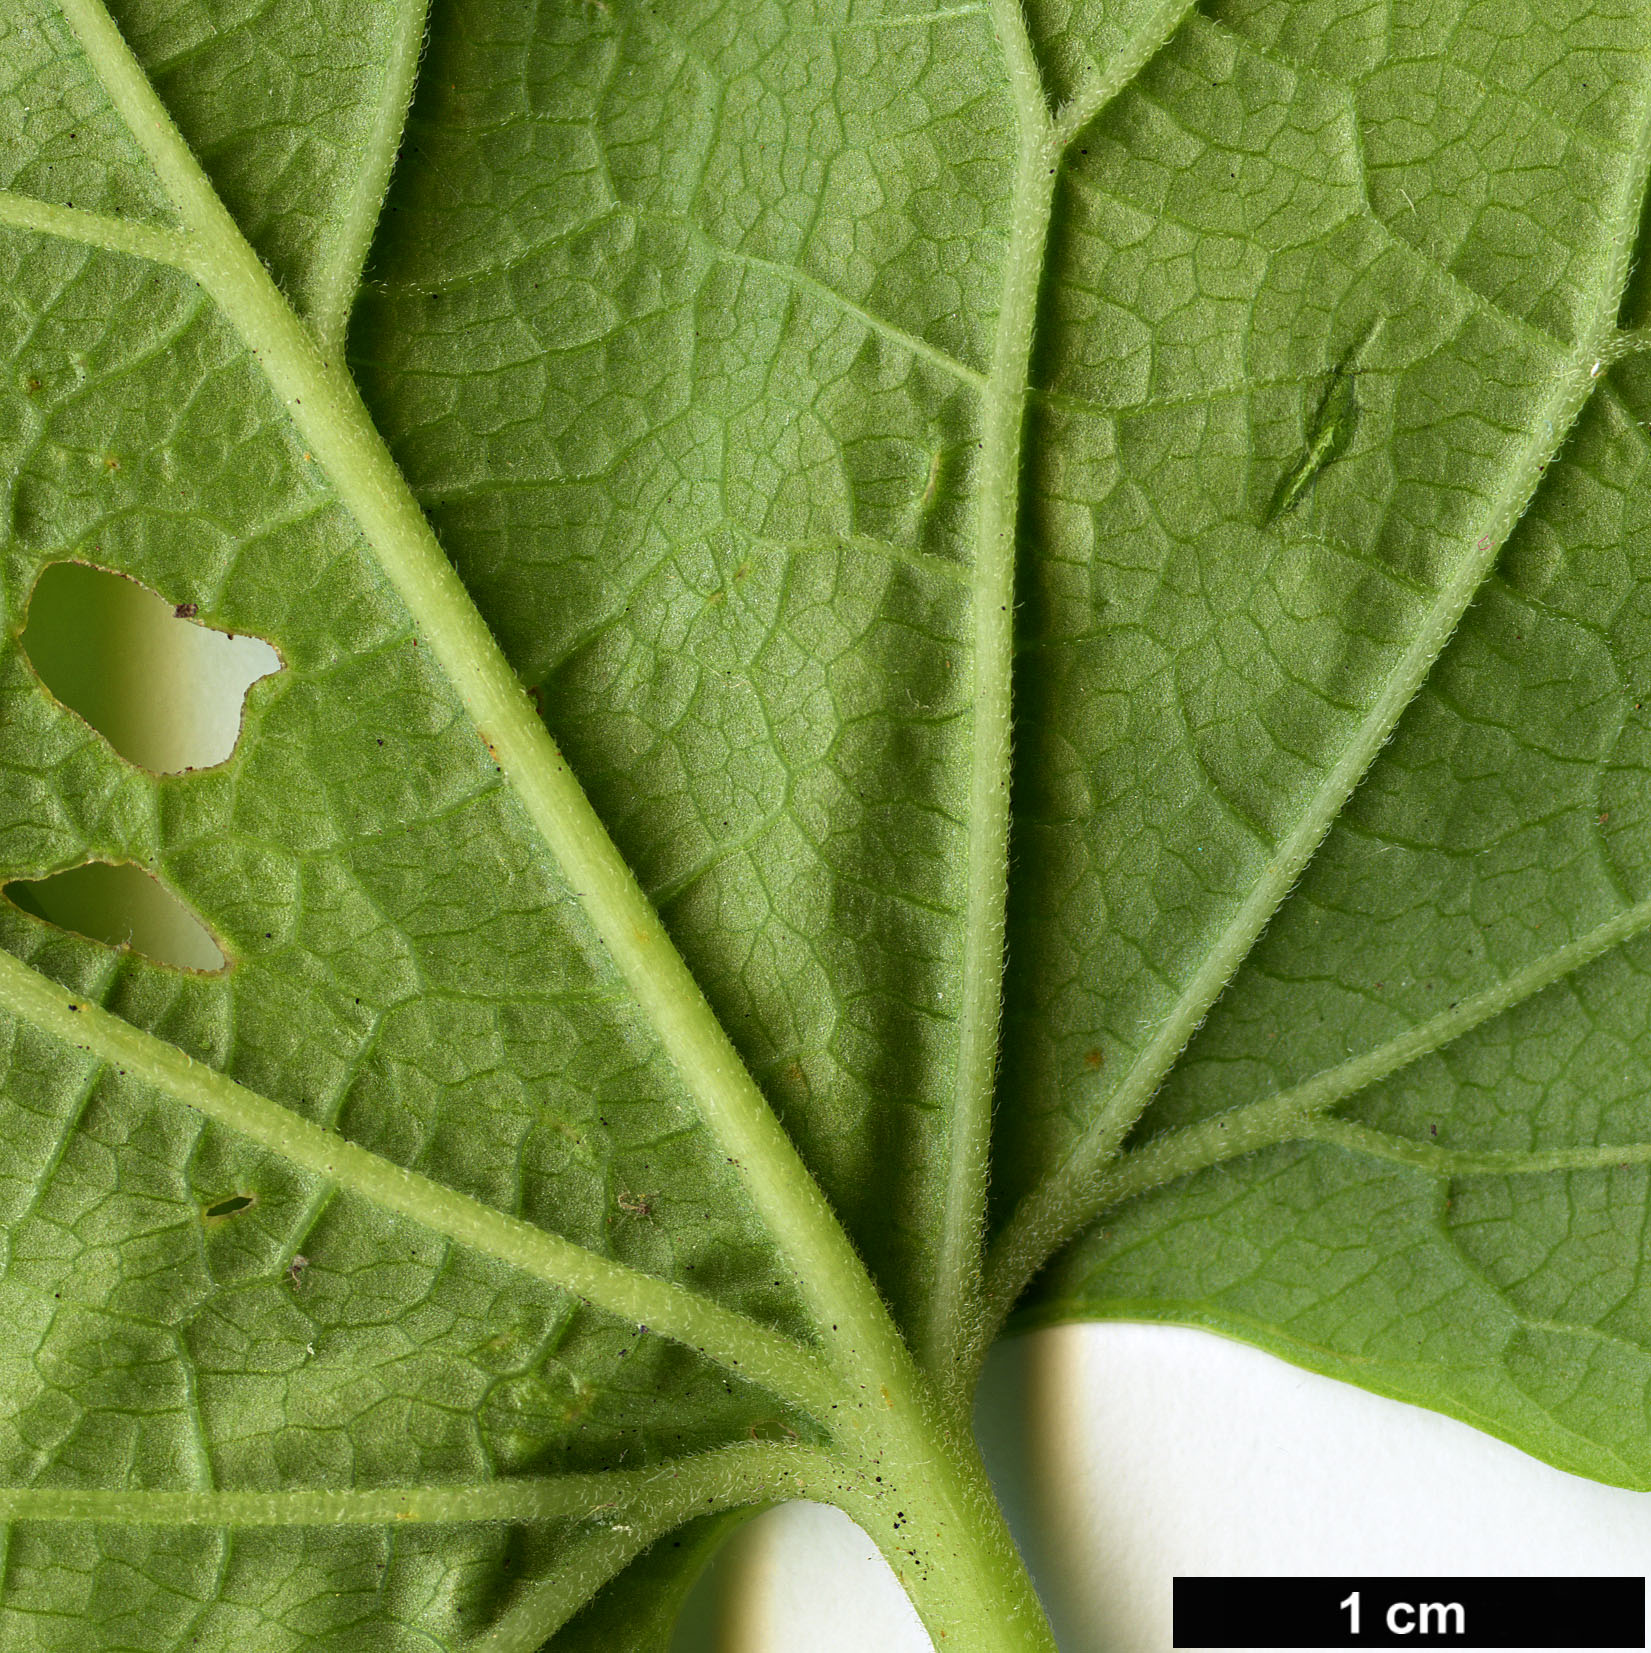 High resolution image: Family: Torricelliaceae - Genus: Torricellia - Taxon: tiliifolia